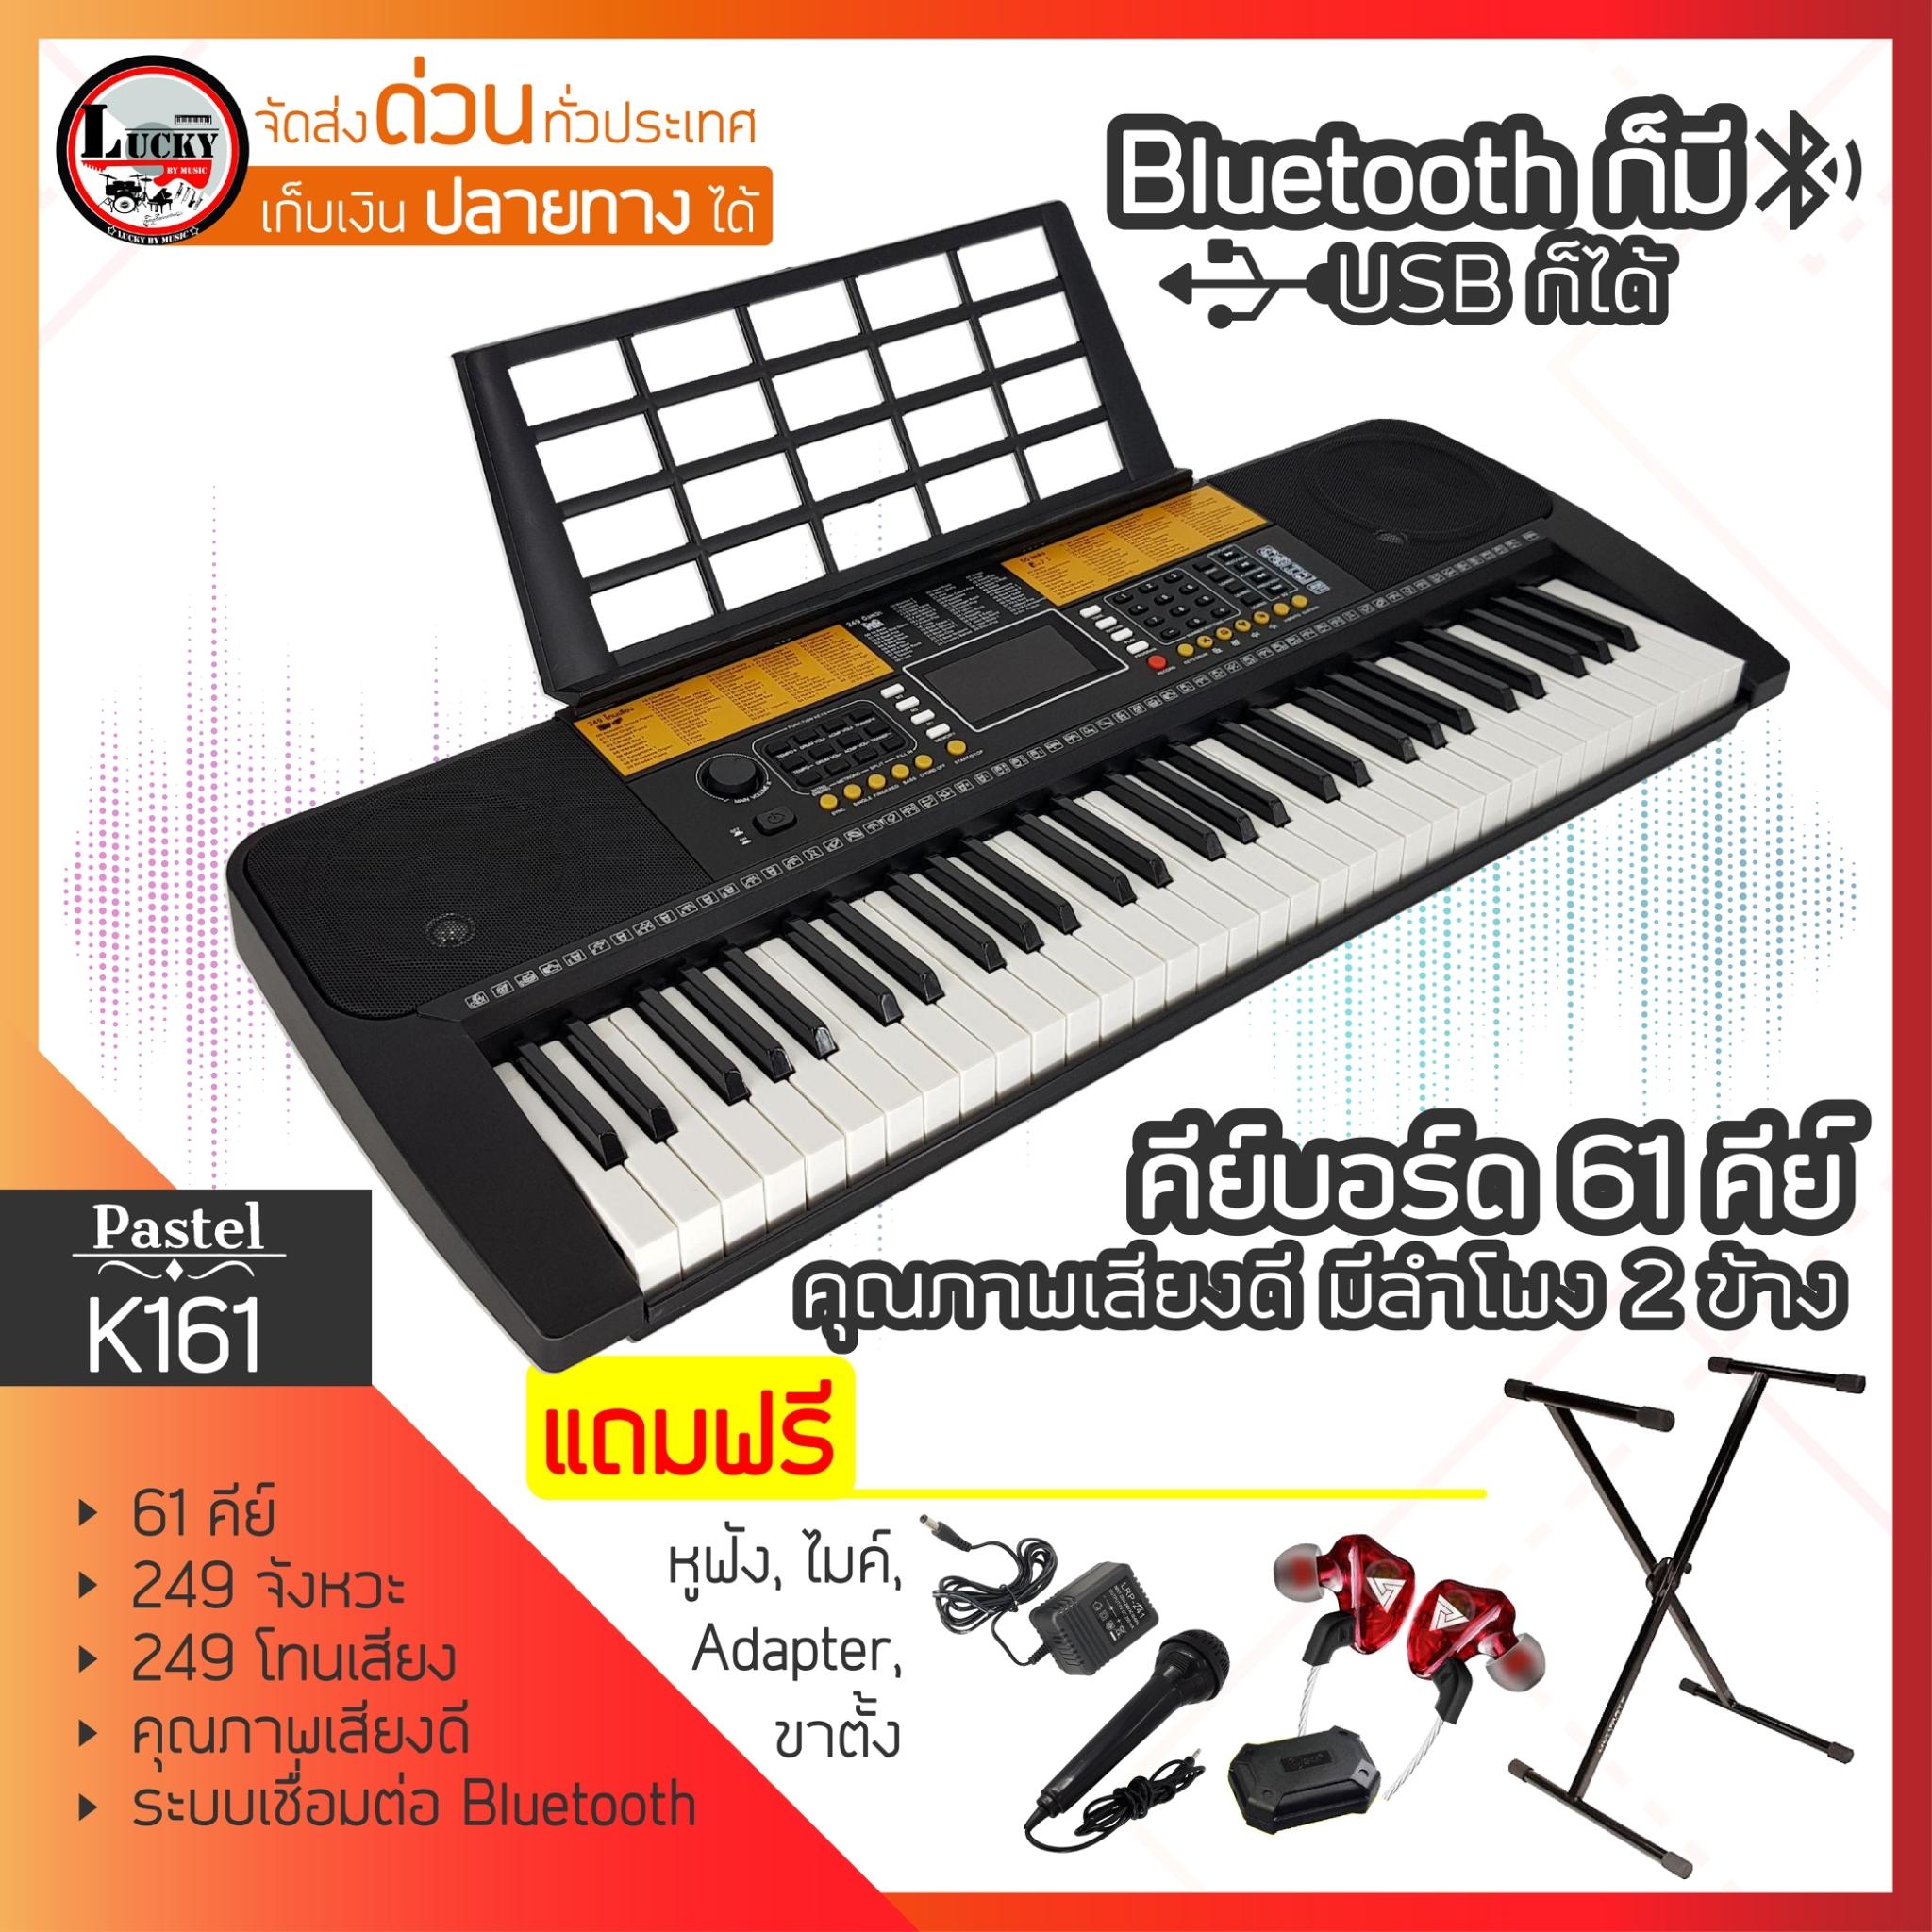 ส่งฟรี* คีย์บอร์ด 61 คีย์ K161 มีโทนเสียง 249 จังหวะ มีช่อง USB เสียงกลอง เครื่องเป่า เสียงสัตว์ มีแบตในตัว *แถมฟรี หูฟัง และขาตั้งคีย์บอร์ด PIANO